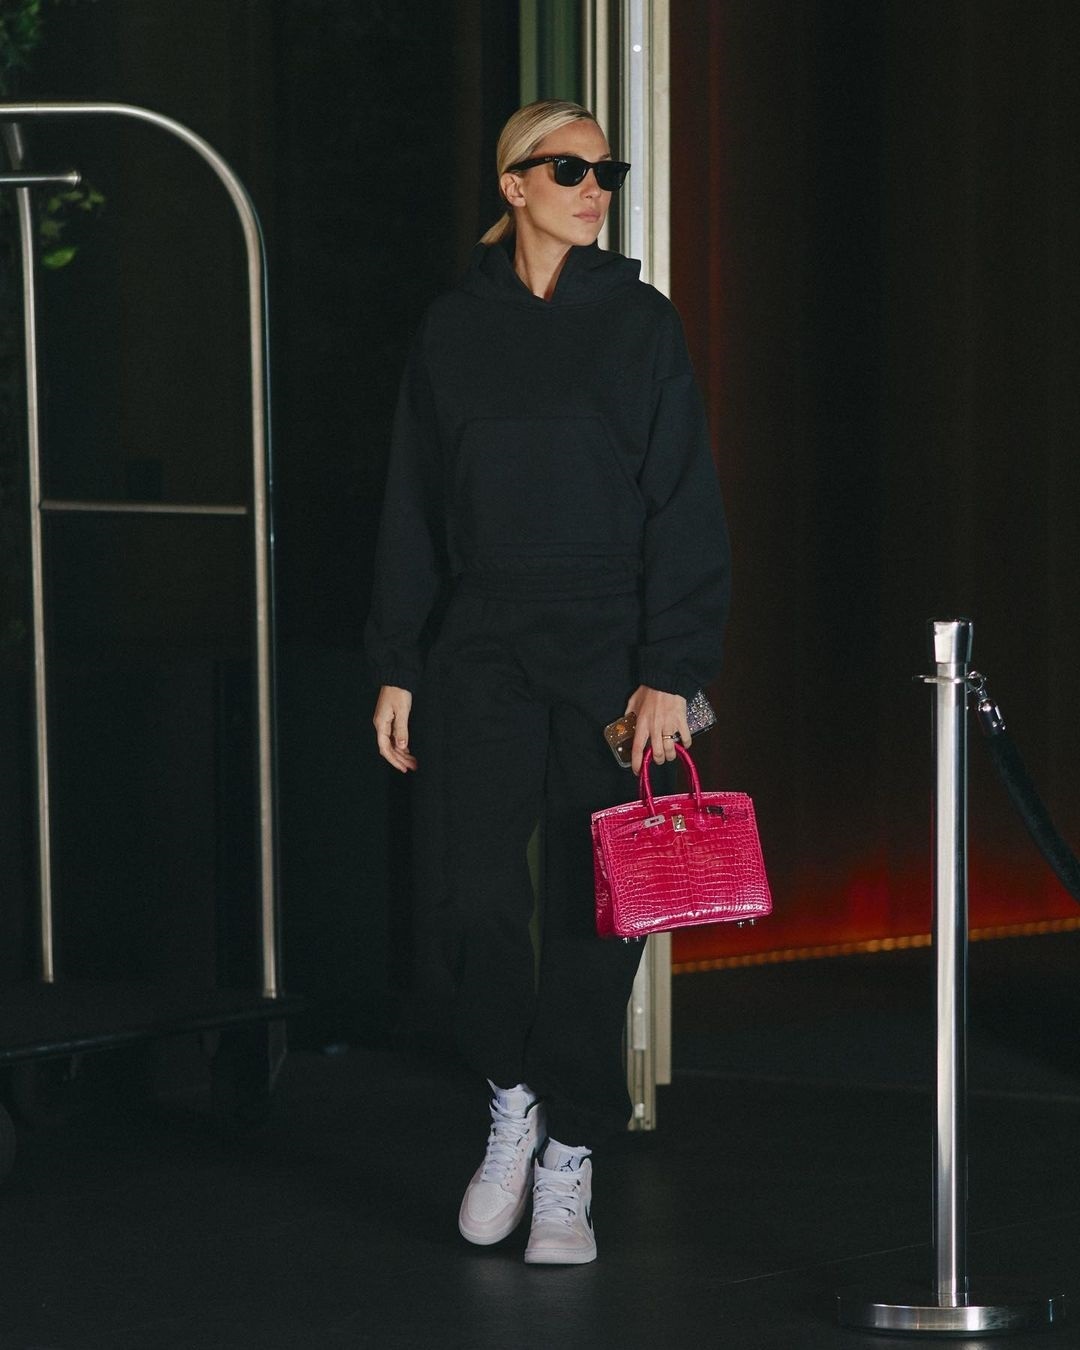 Chiếc túi Birkin da cá sấu màu hồng trở nên nổi bật khi kết hợp với trang phục mang gam tối. Túi Birkin da cá sấu Alligator (Matte), cỡ 25, hiện có giá bán là 42.100 euro (1,1 tỷ đồng), theo thông tin từ PurseBlog. Ngoài phiên bản da cá sấu, bộ sưu tập túi xách hàng hiệu của Alice Campello còn có túi Birkin da đà điểu và da tiêu chuẩn. Cô cũng sắm nhiều mẫu túi Kelly - một dòng sản phẩm túi nổi tiếng khác từ Hermès (Ảnh: @alicecampello).